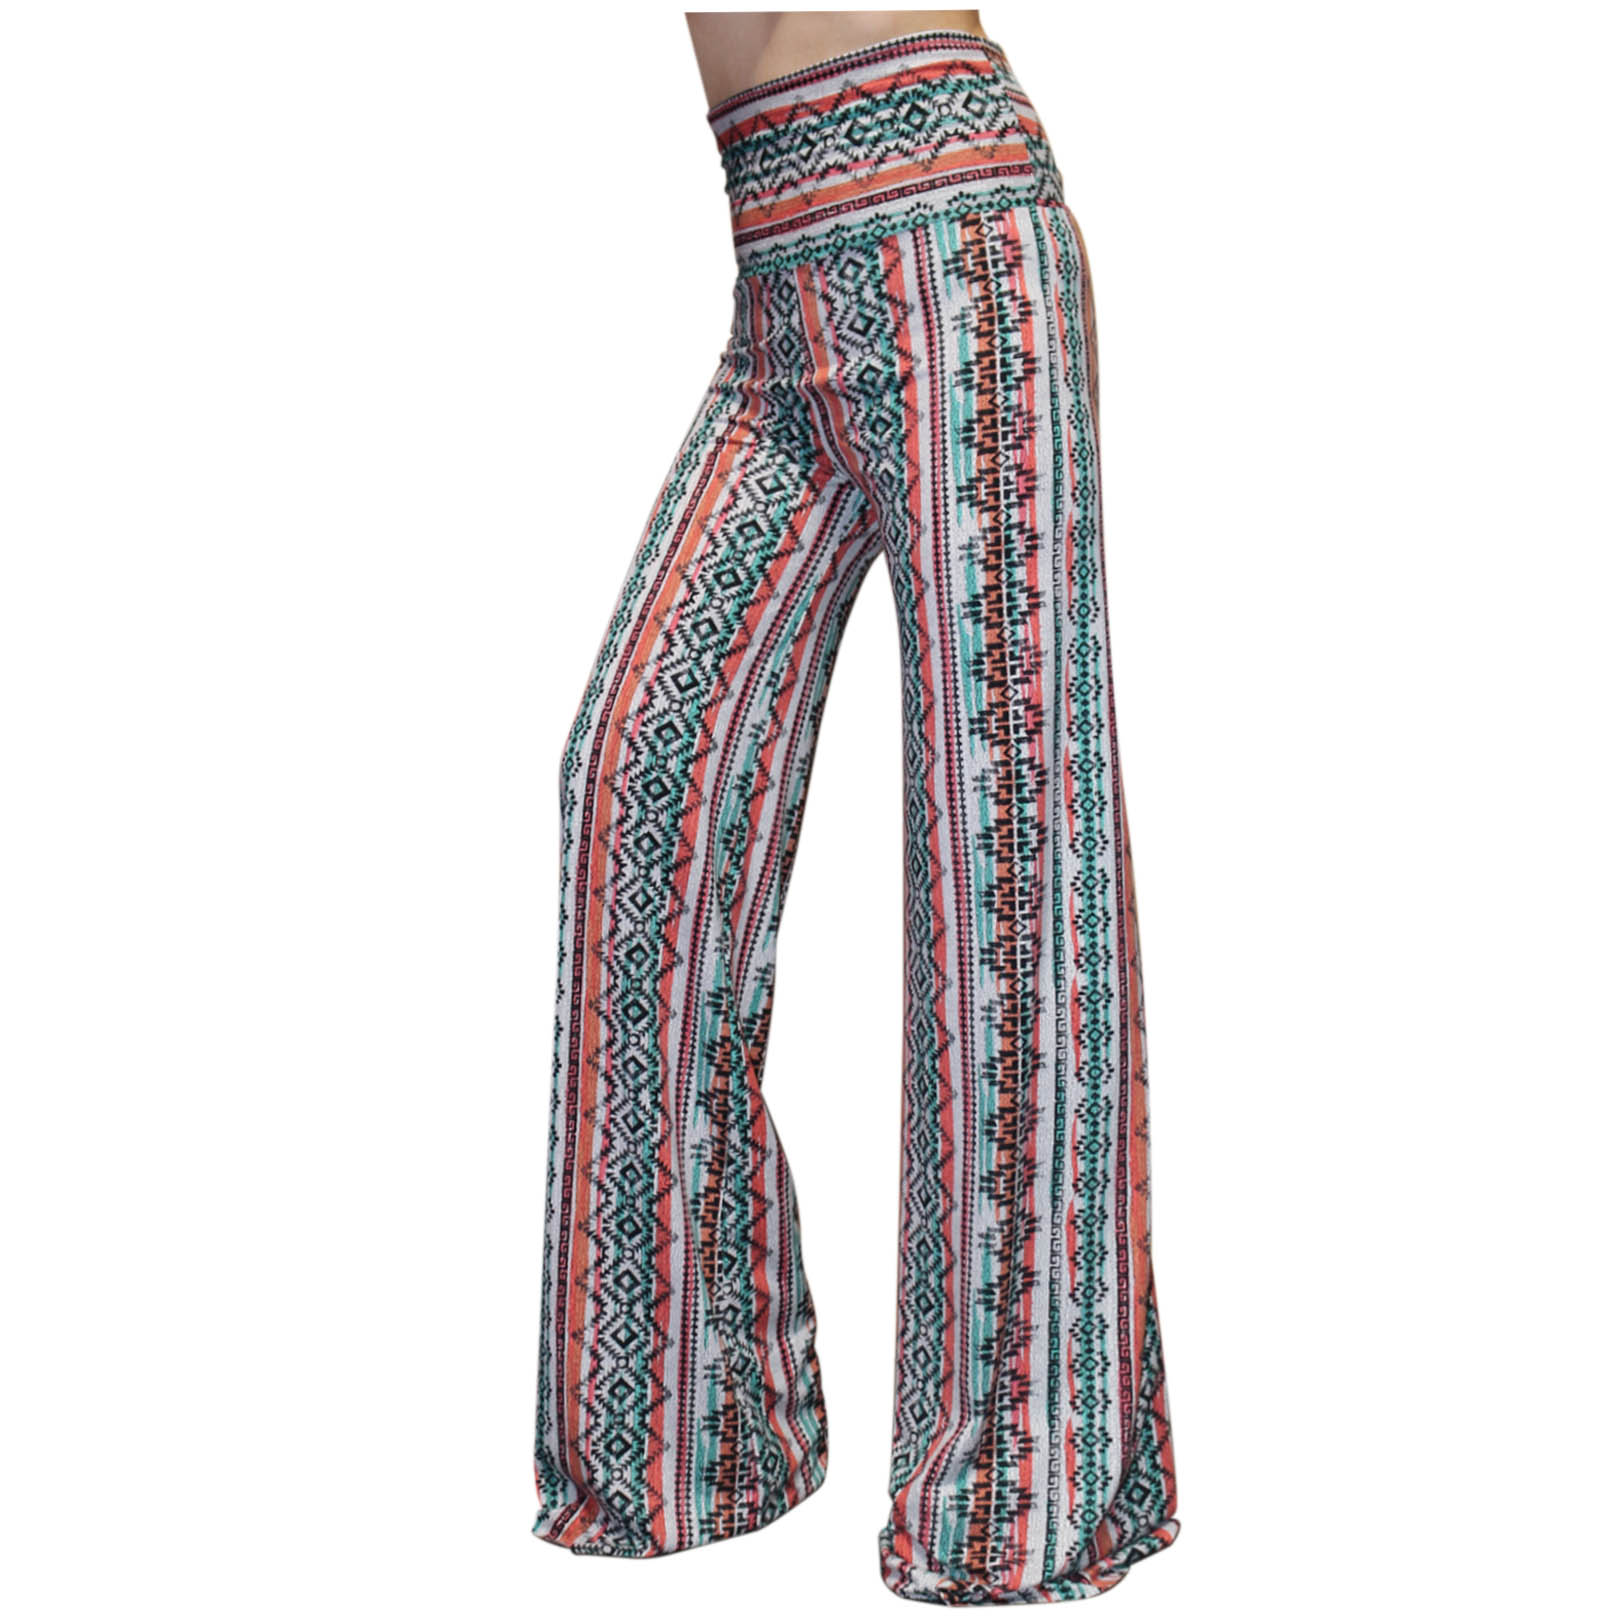 Boho Hippie High Waist Wide Leg Long Flared Bell Bottom Pants S M L XL ...